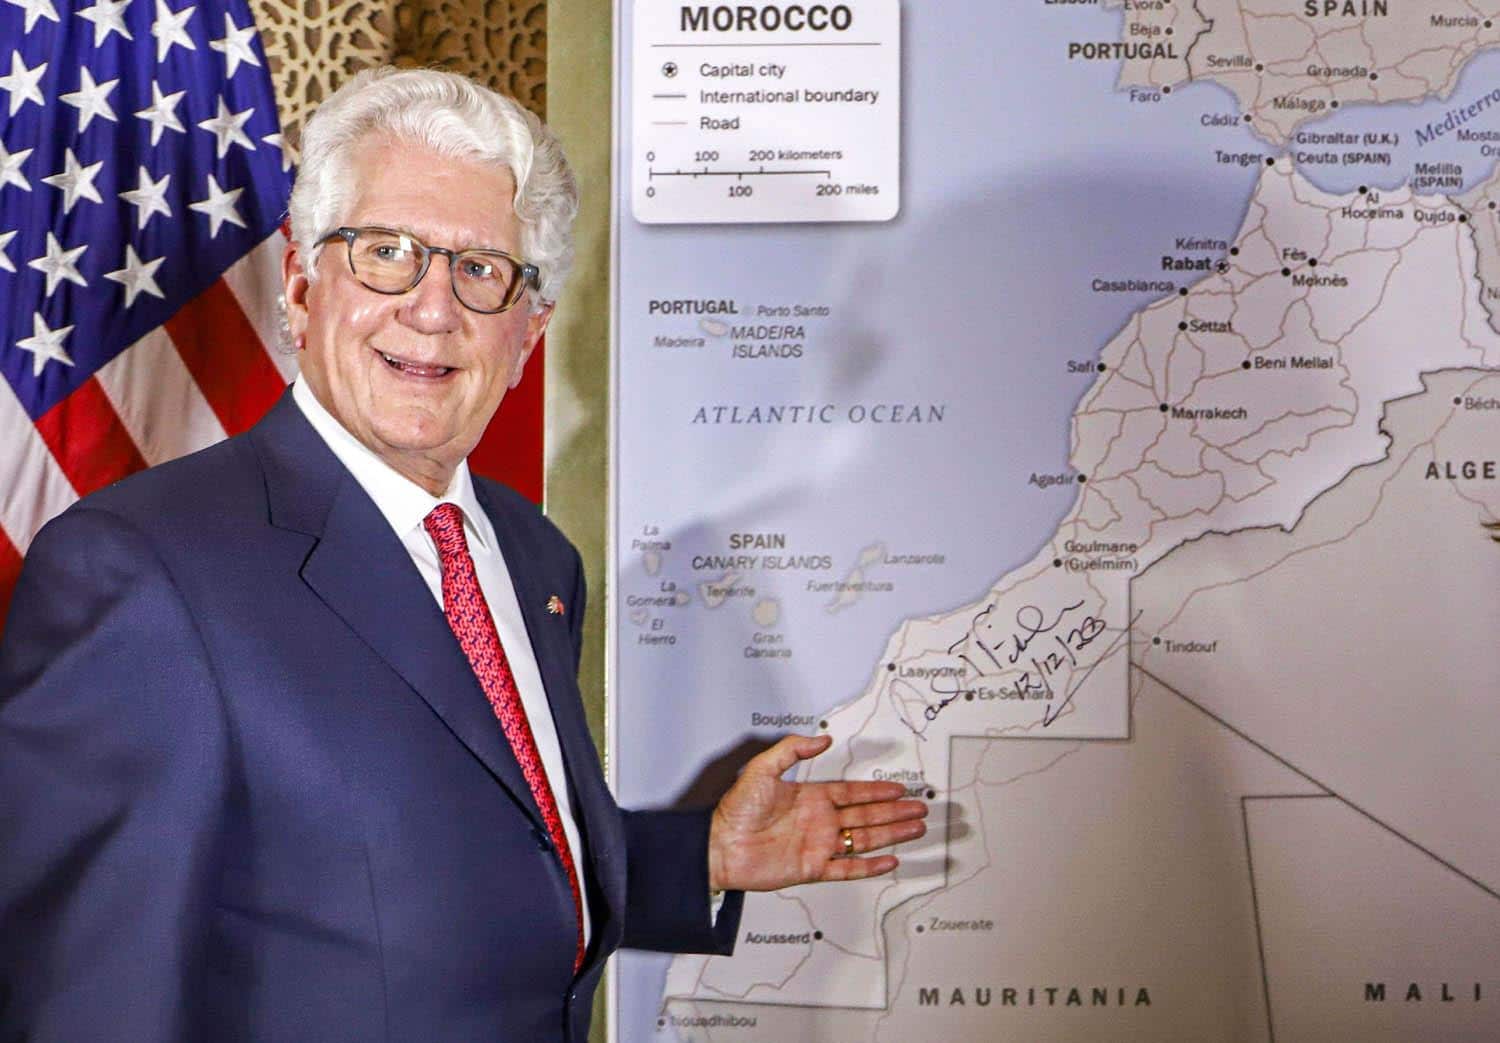 السفير الأميركي السابق: المغرب صانع الصفقات وسعدت بلقاء أخنوش بـ”دافوس”